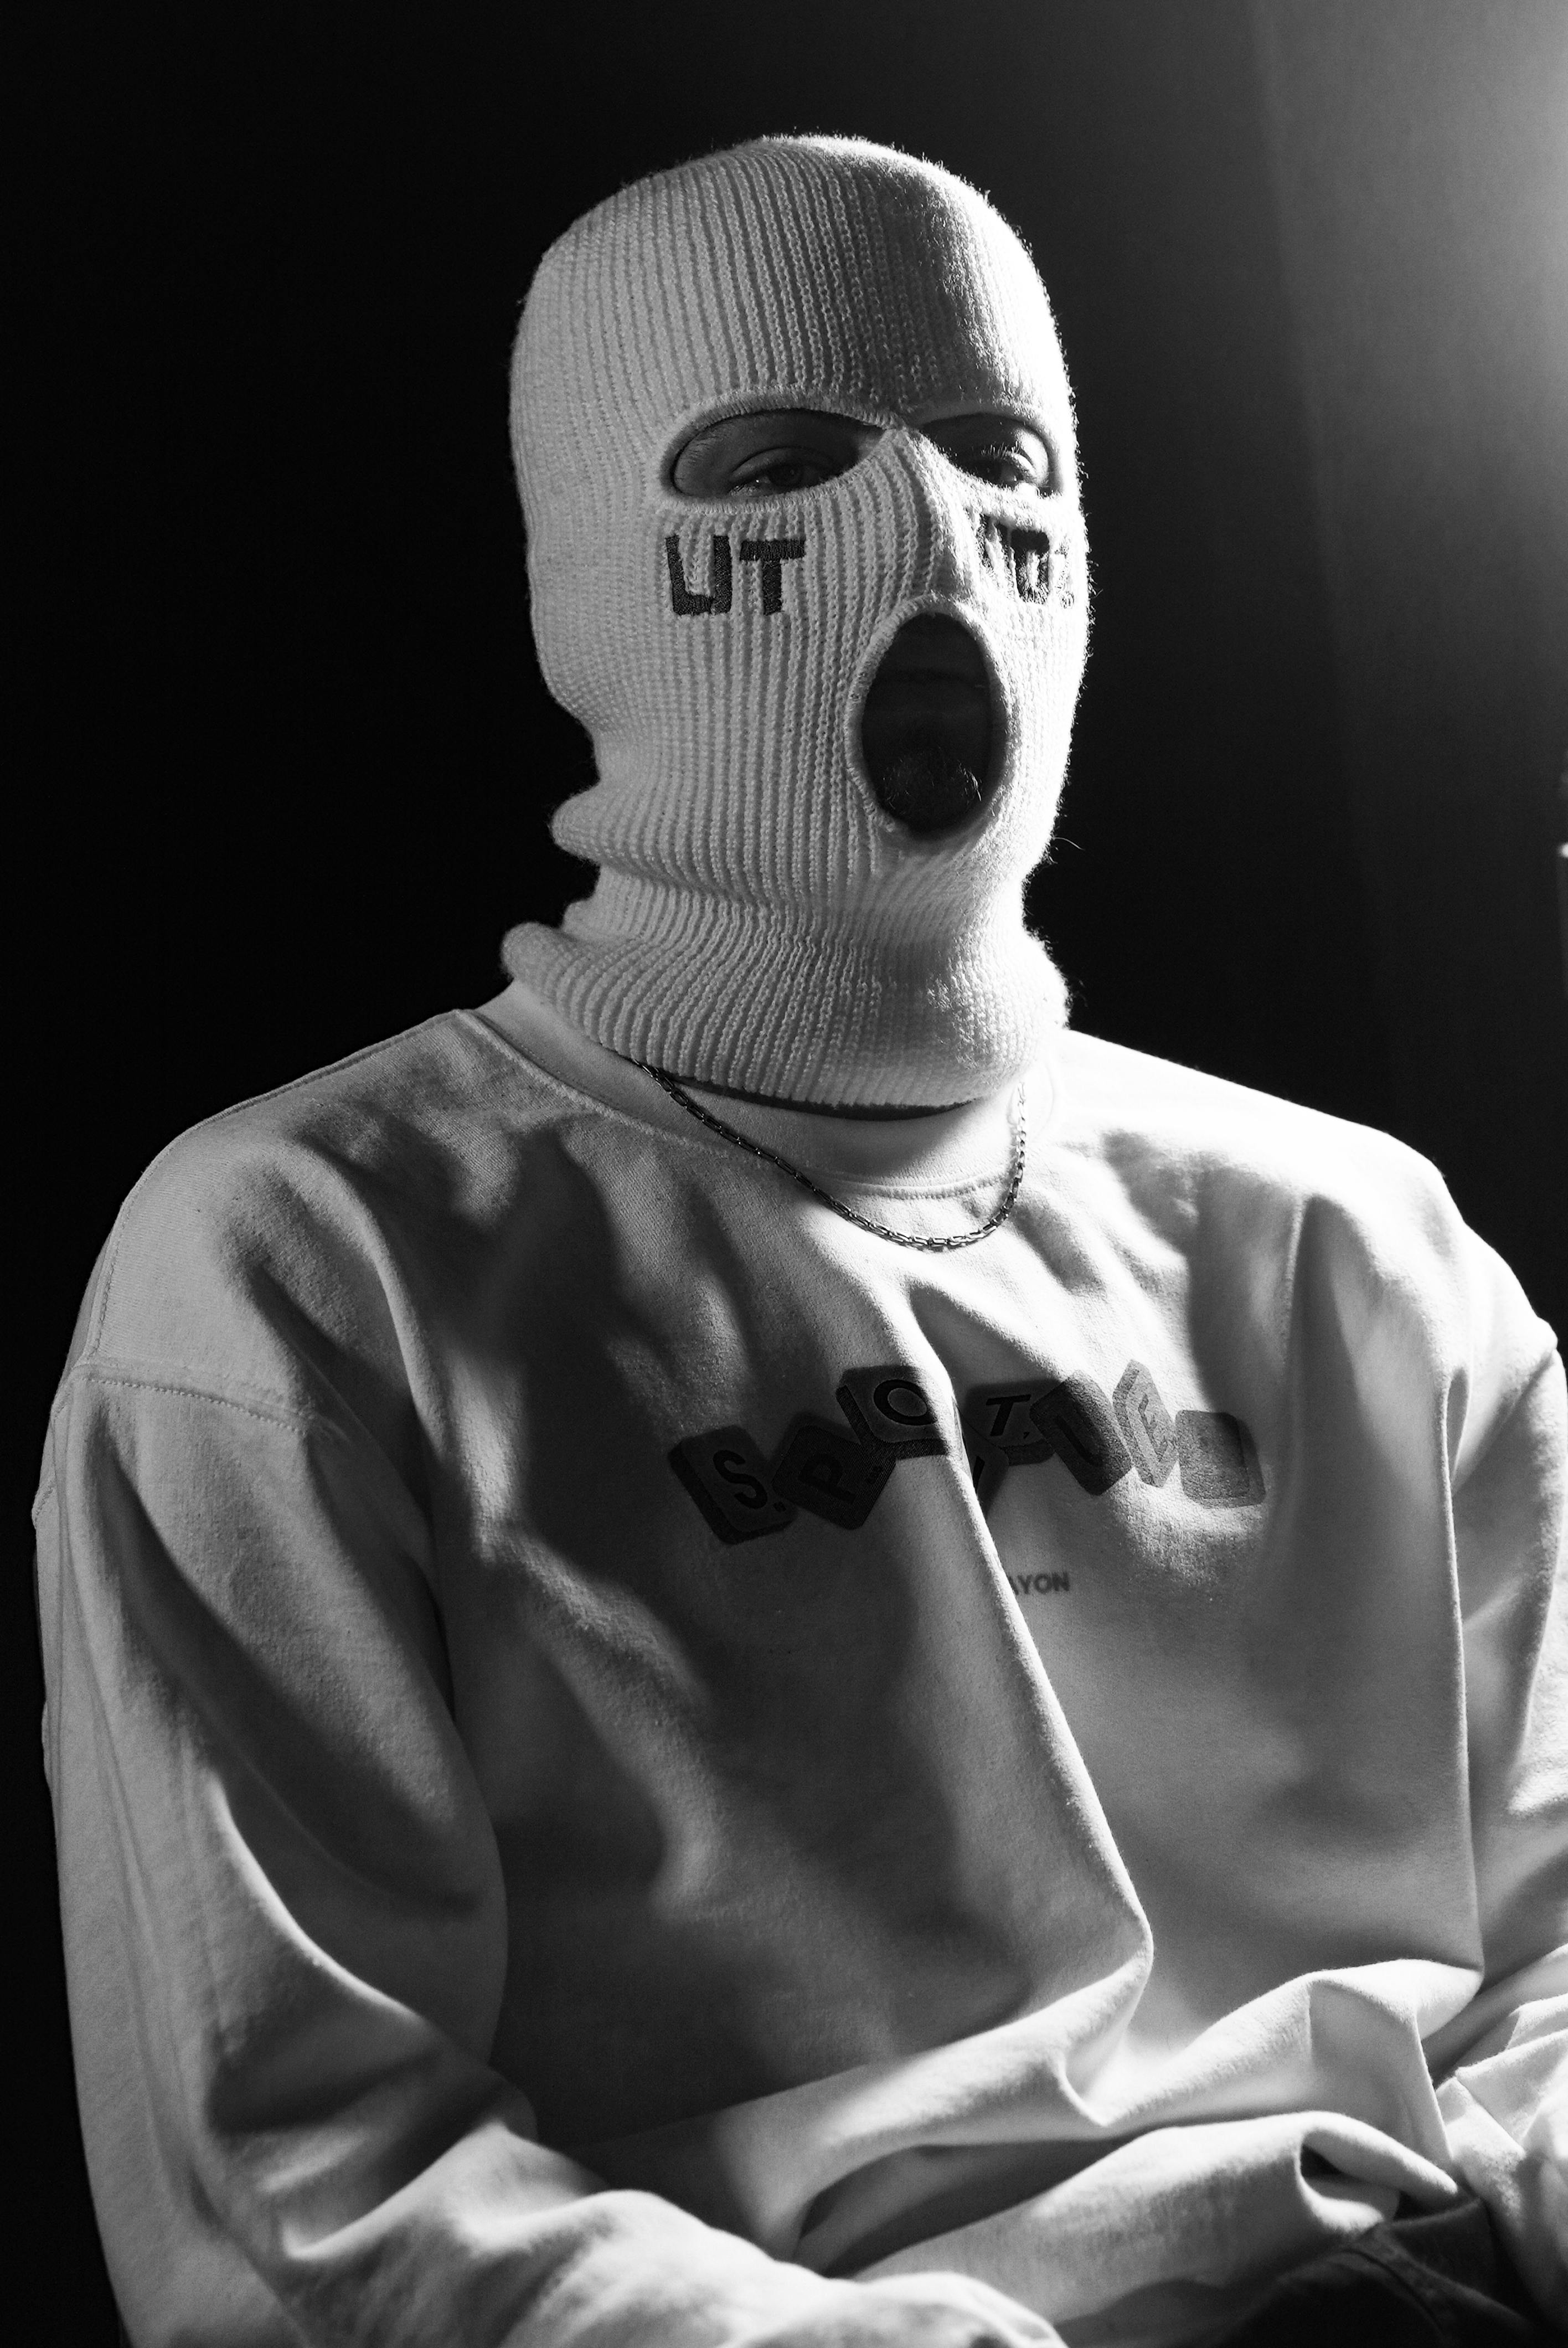 Foto de stock gratuita sobre anónimo, escala de grises, máscara, fotos de  personas, tiro vertical